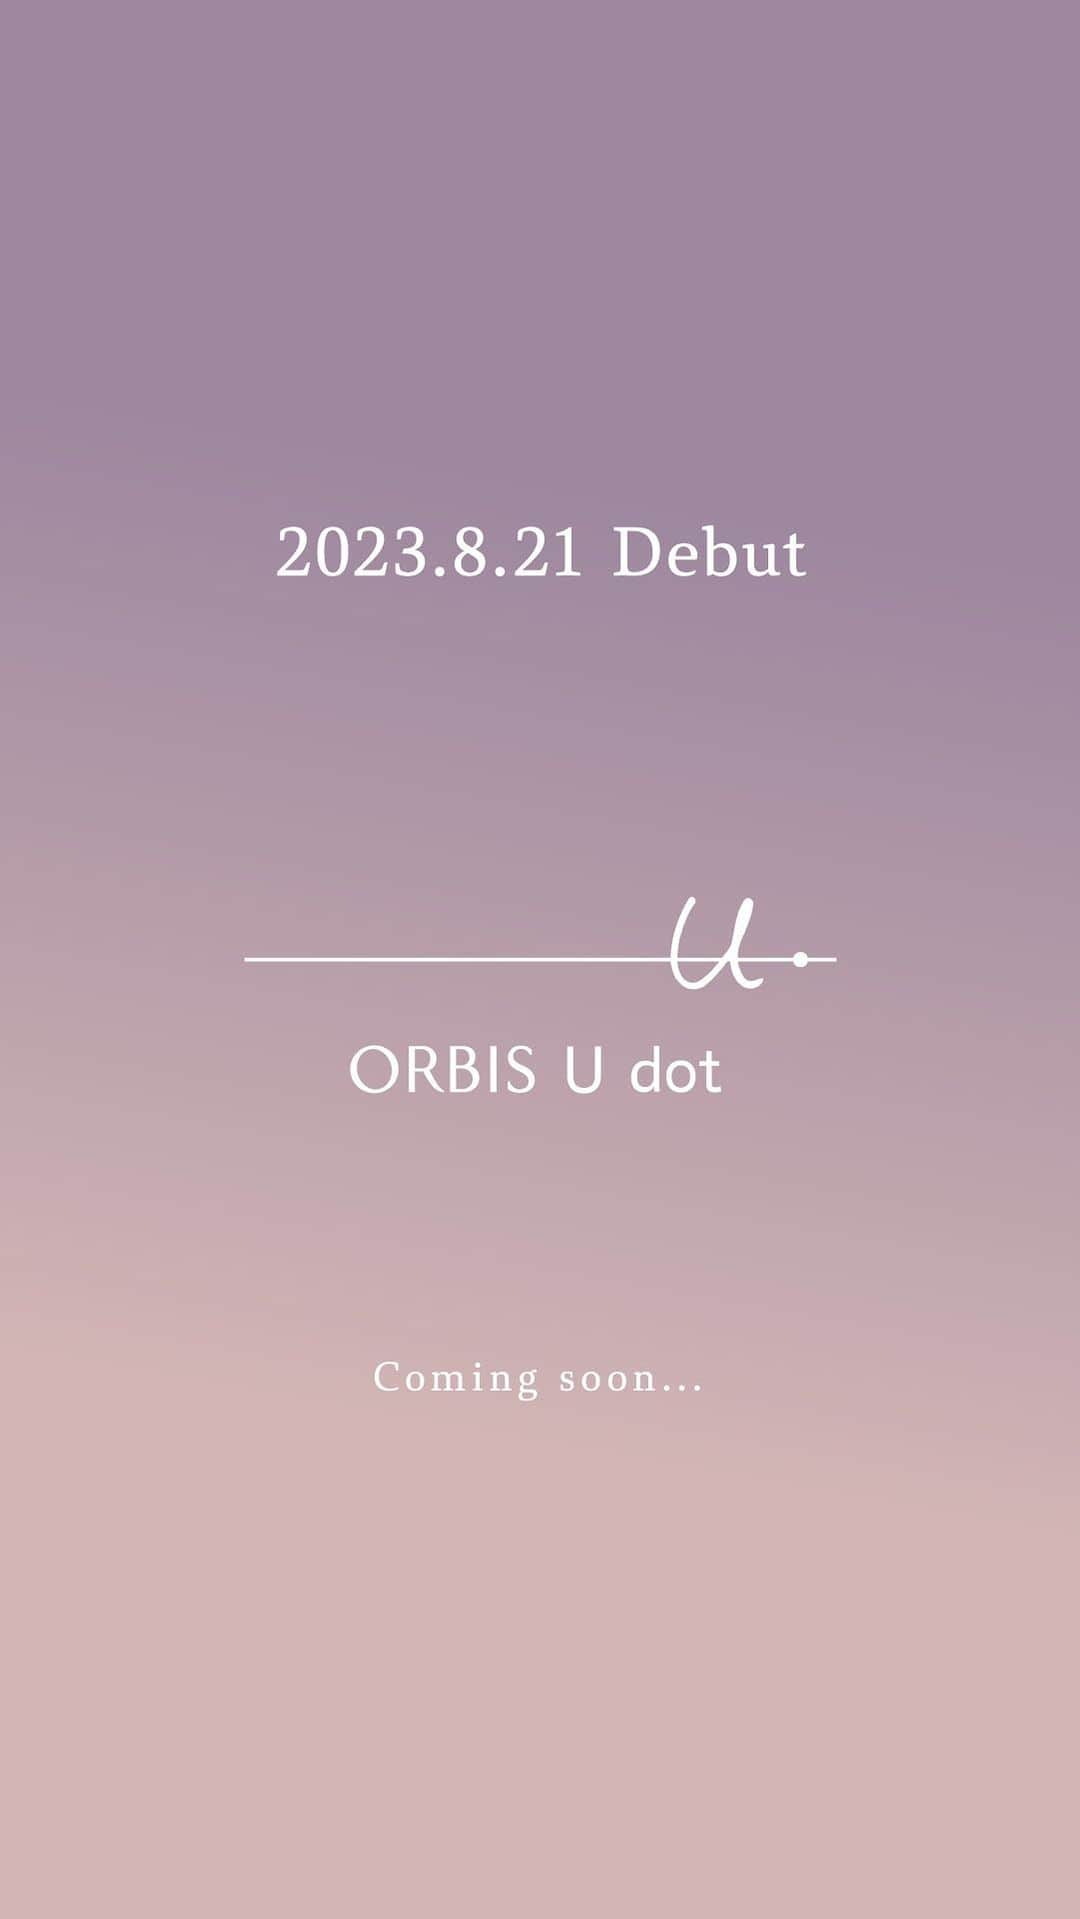 オルビス ORBIS official Instagramのインスタグラム